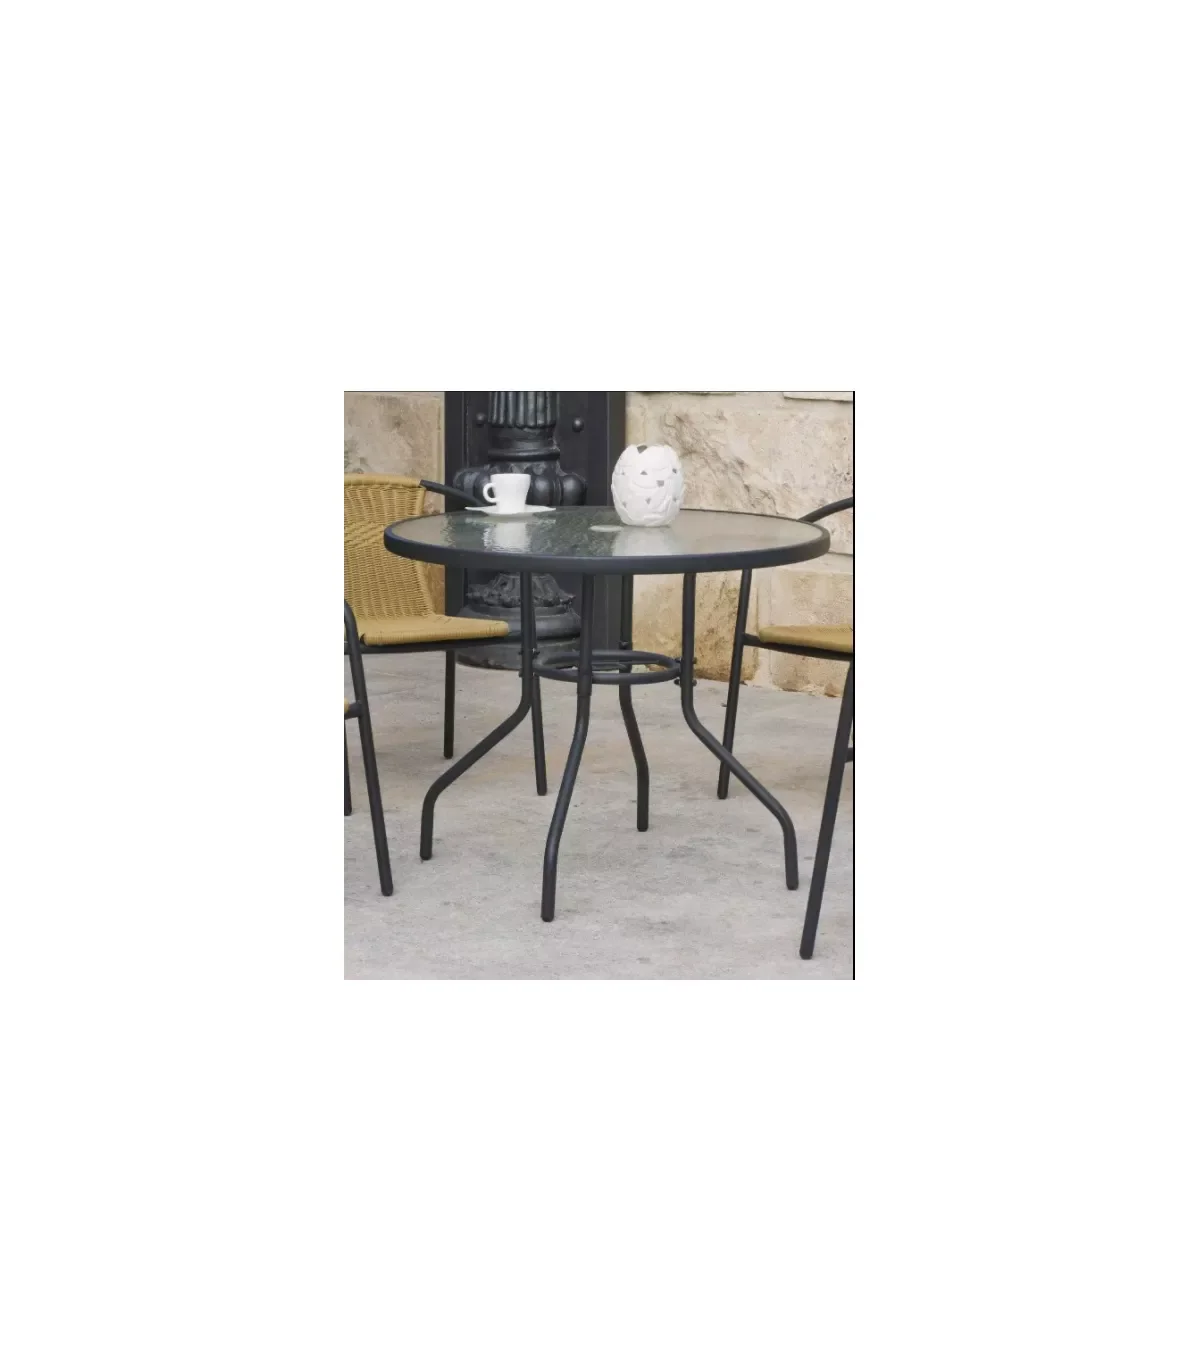 

Наружные столы, стол, терраса, садовая сталь, внешняя отделка, 70 см (ширина), 75 см (высота)